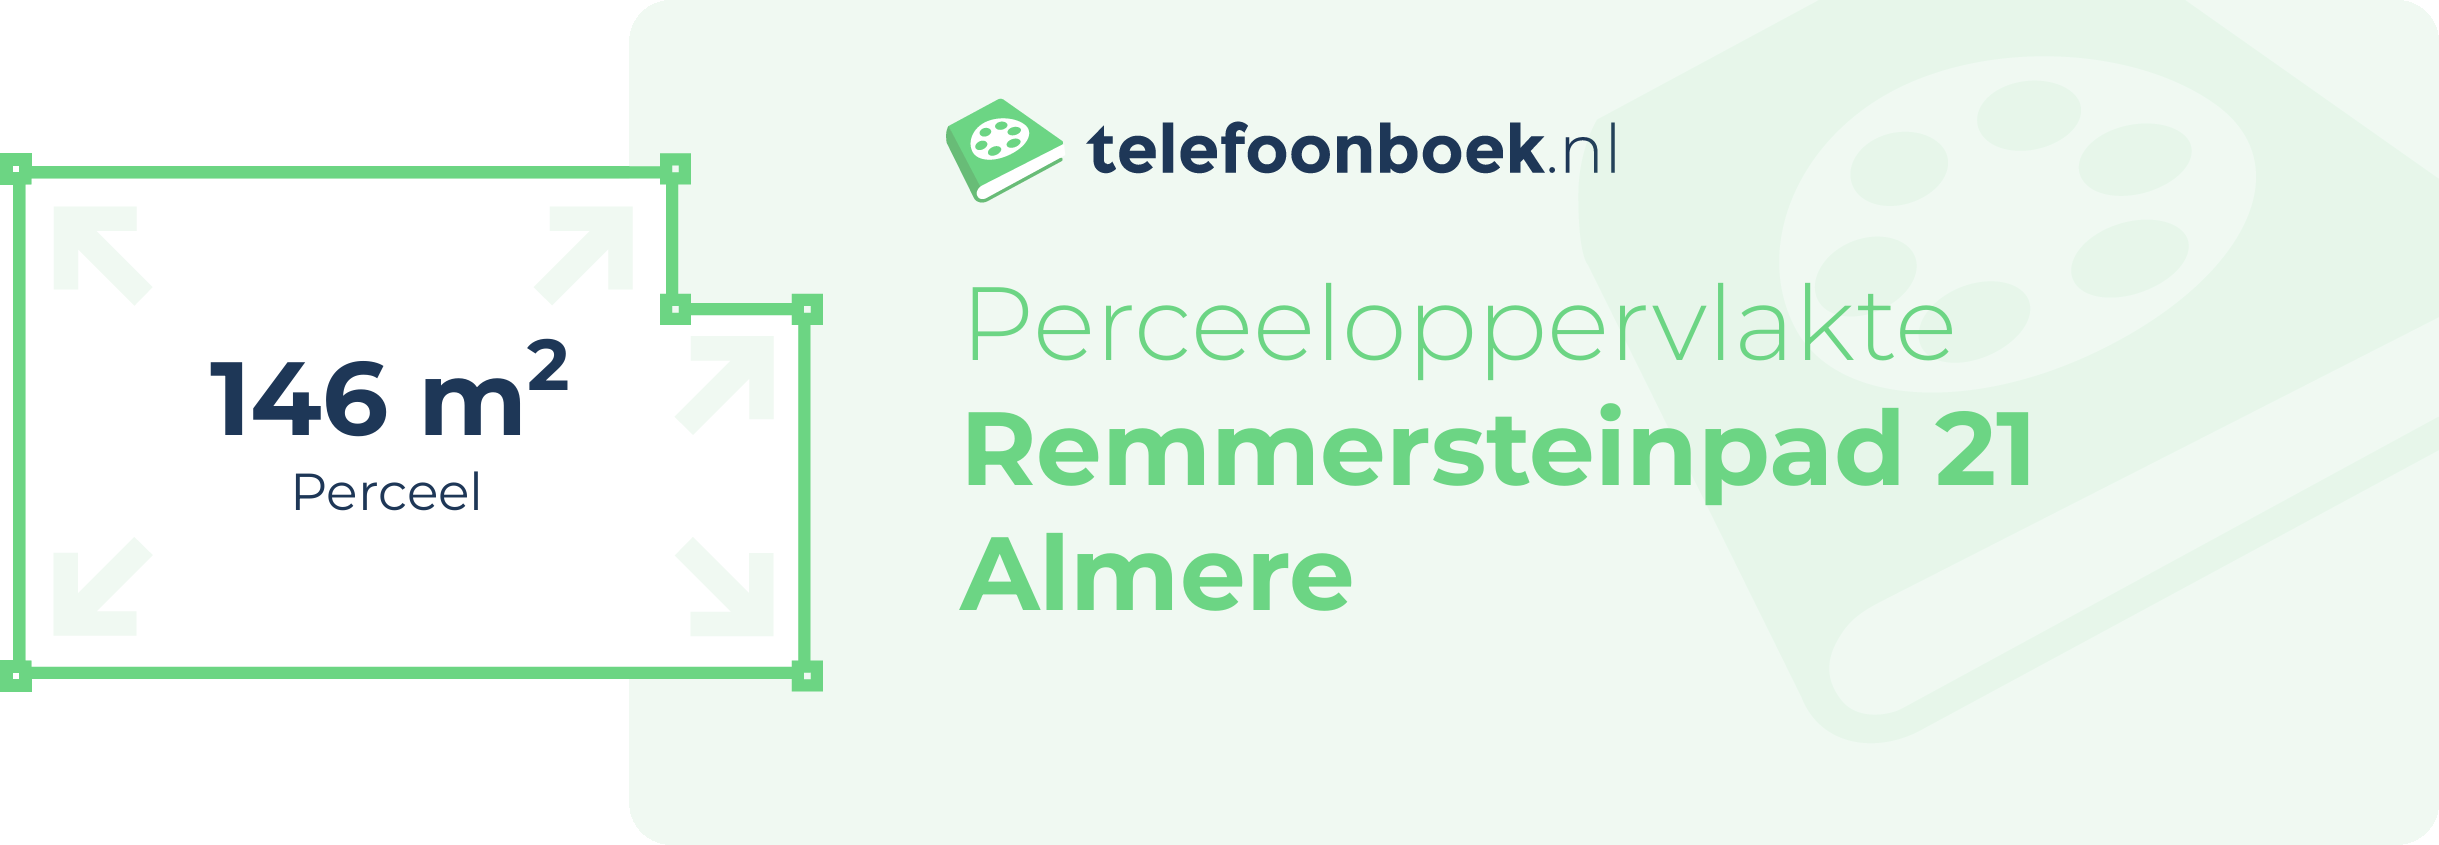 Perceeloppervlakte Remmersteinpad 21 Almere